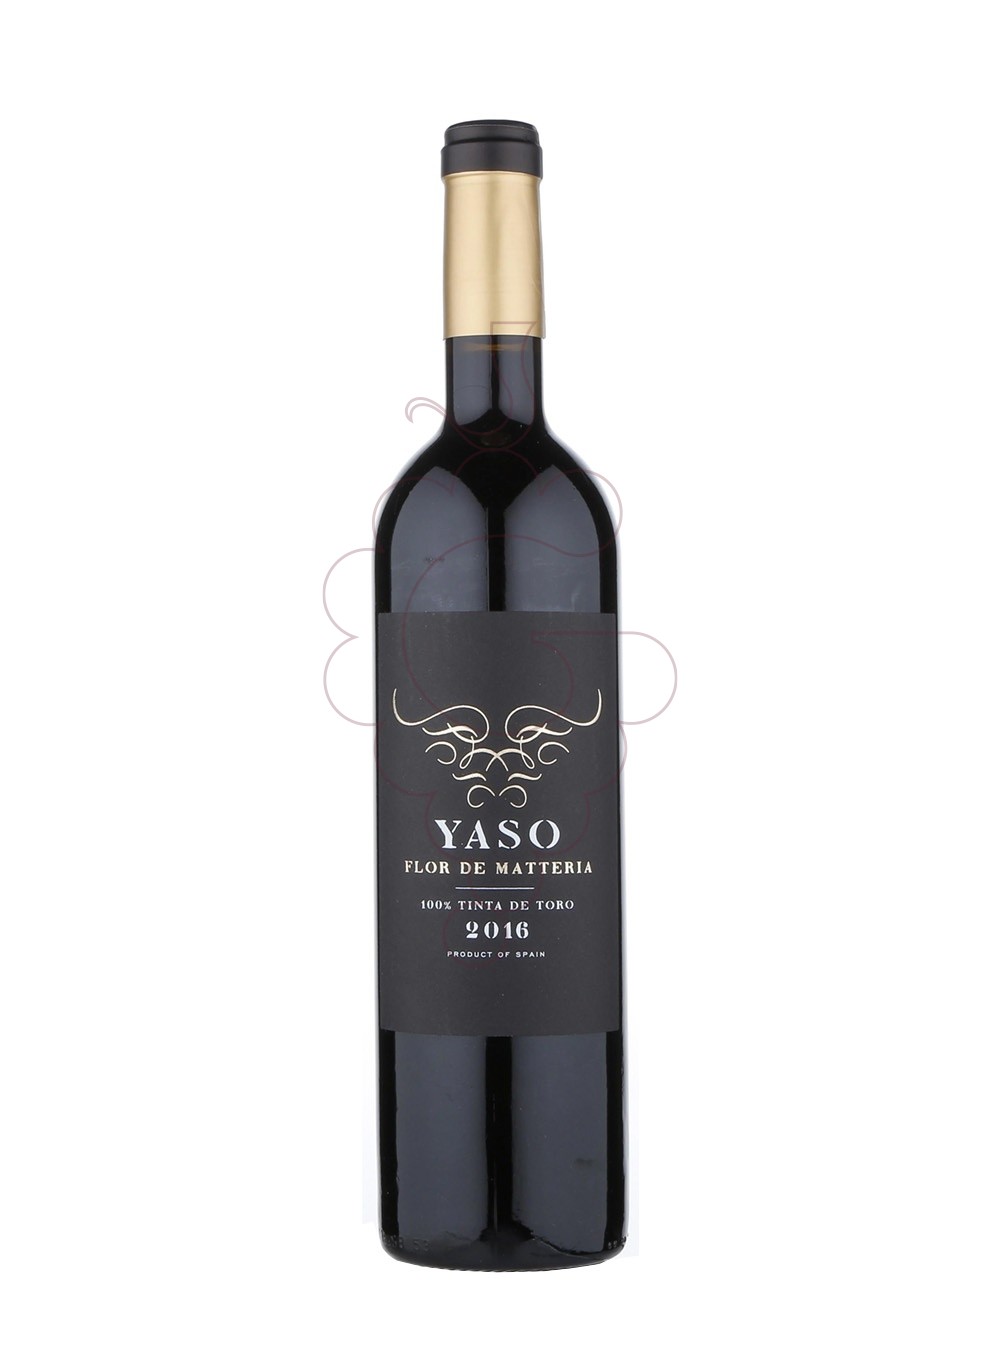 Foto Yaso flor de matteria 2016 vino tinto